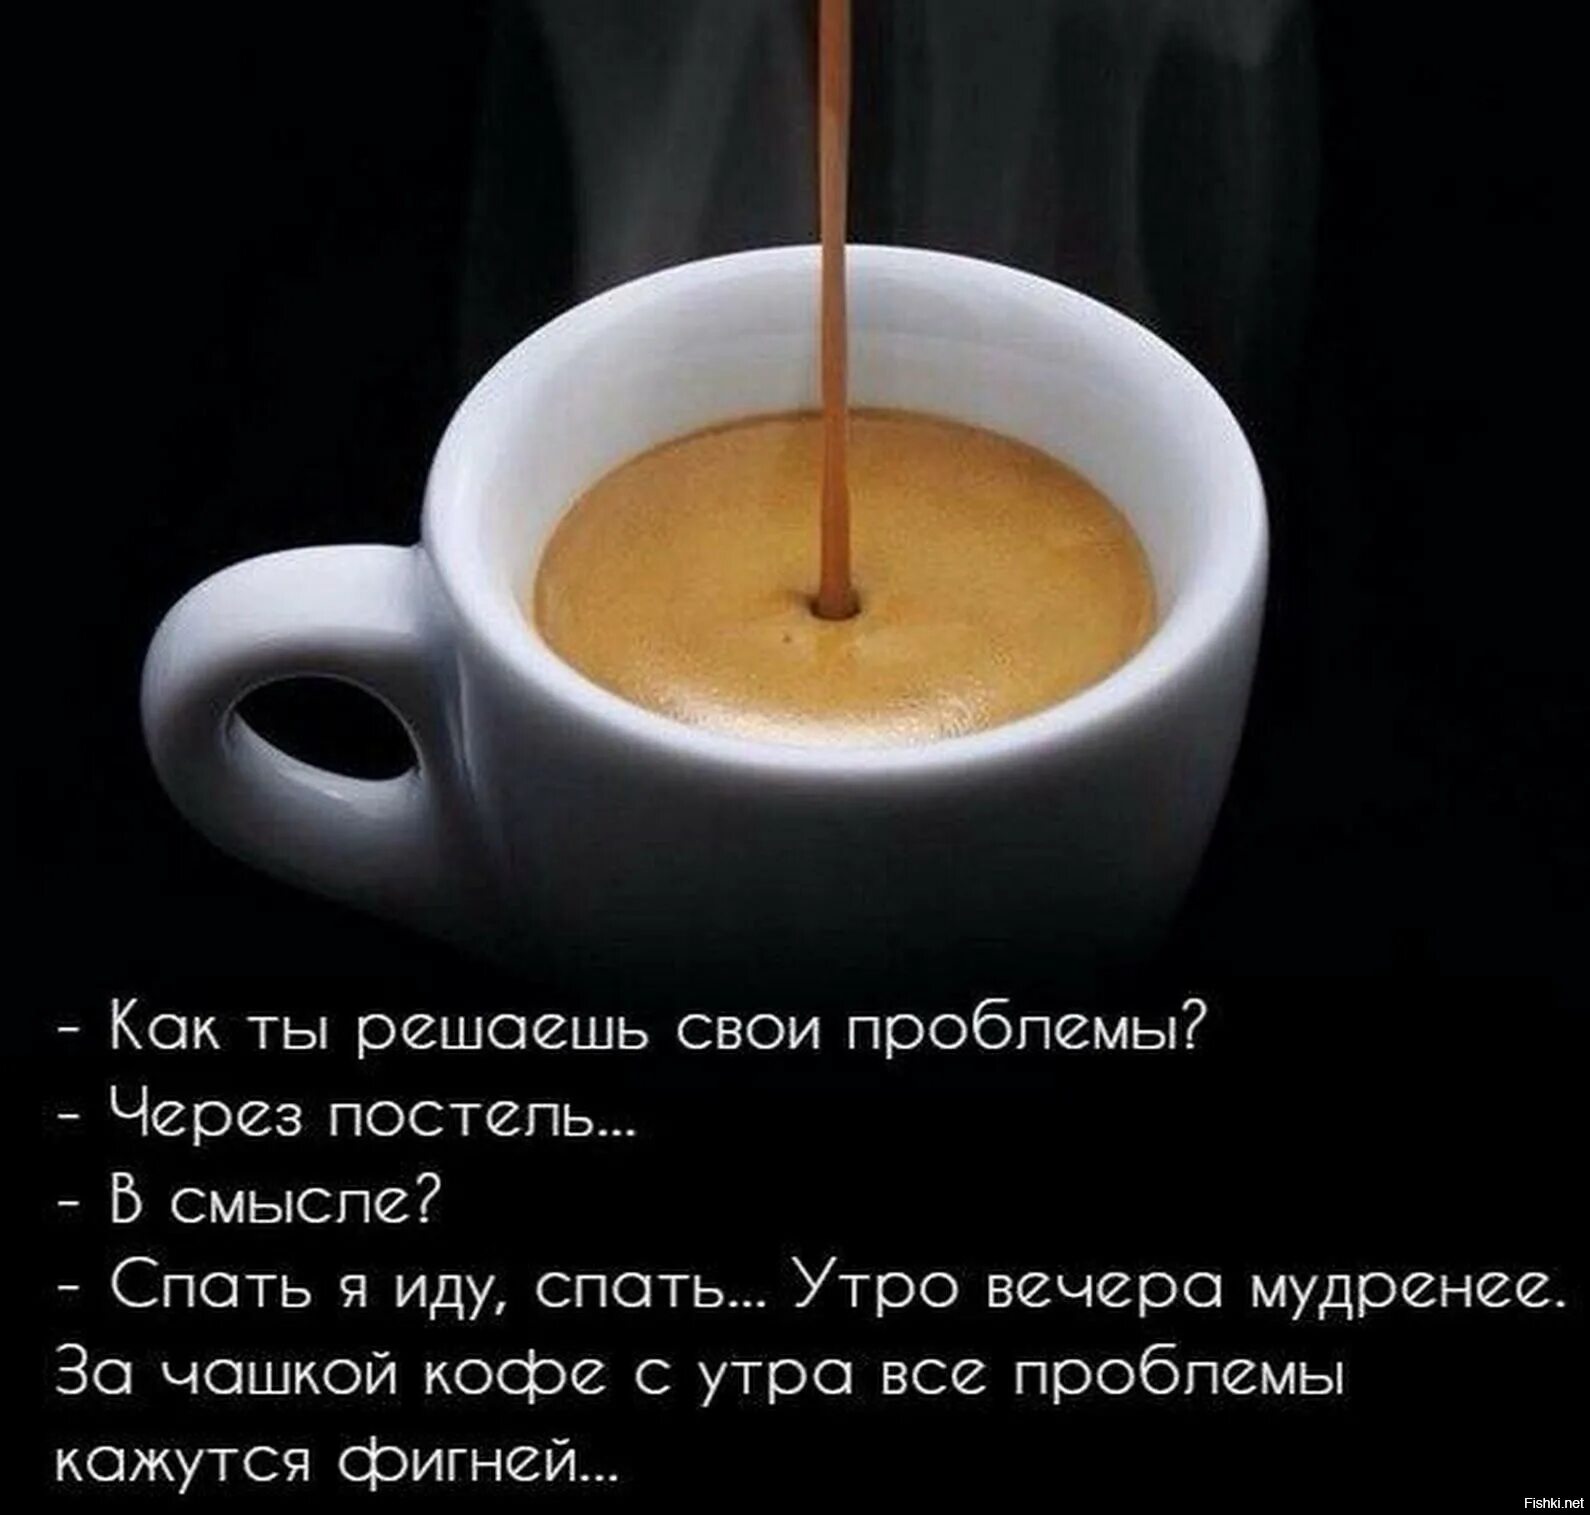 Цитаты про кофе. Статусы про кофе. Цитаты про кофе и утро. Фразы про кофе. Коротко со смыслом доброе утро